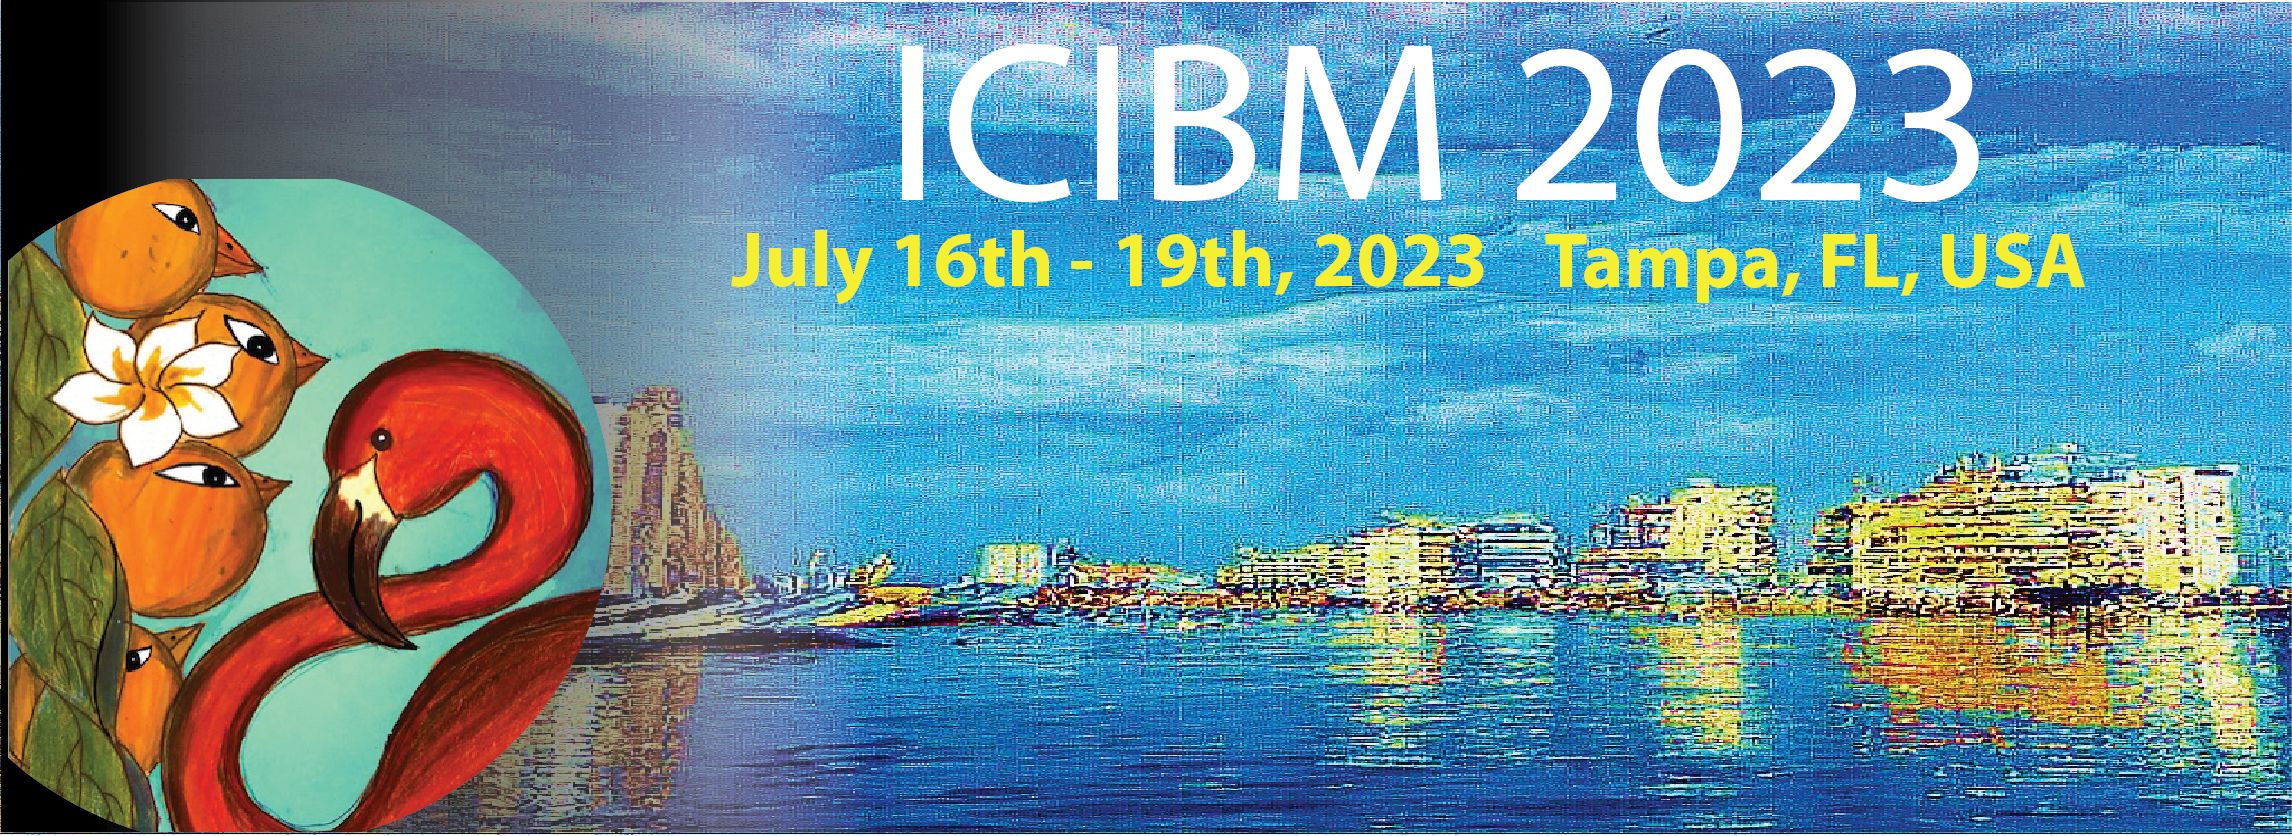 ICIBM 2018